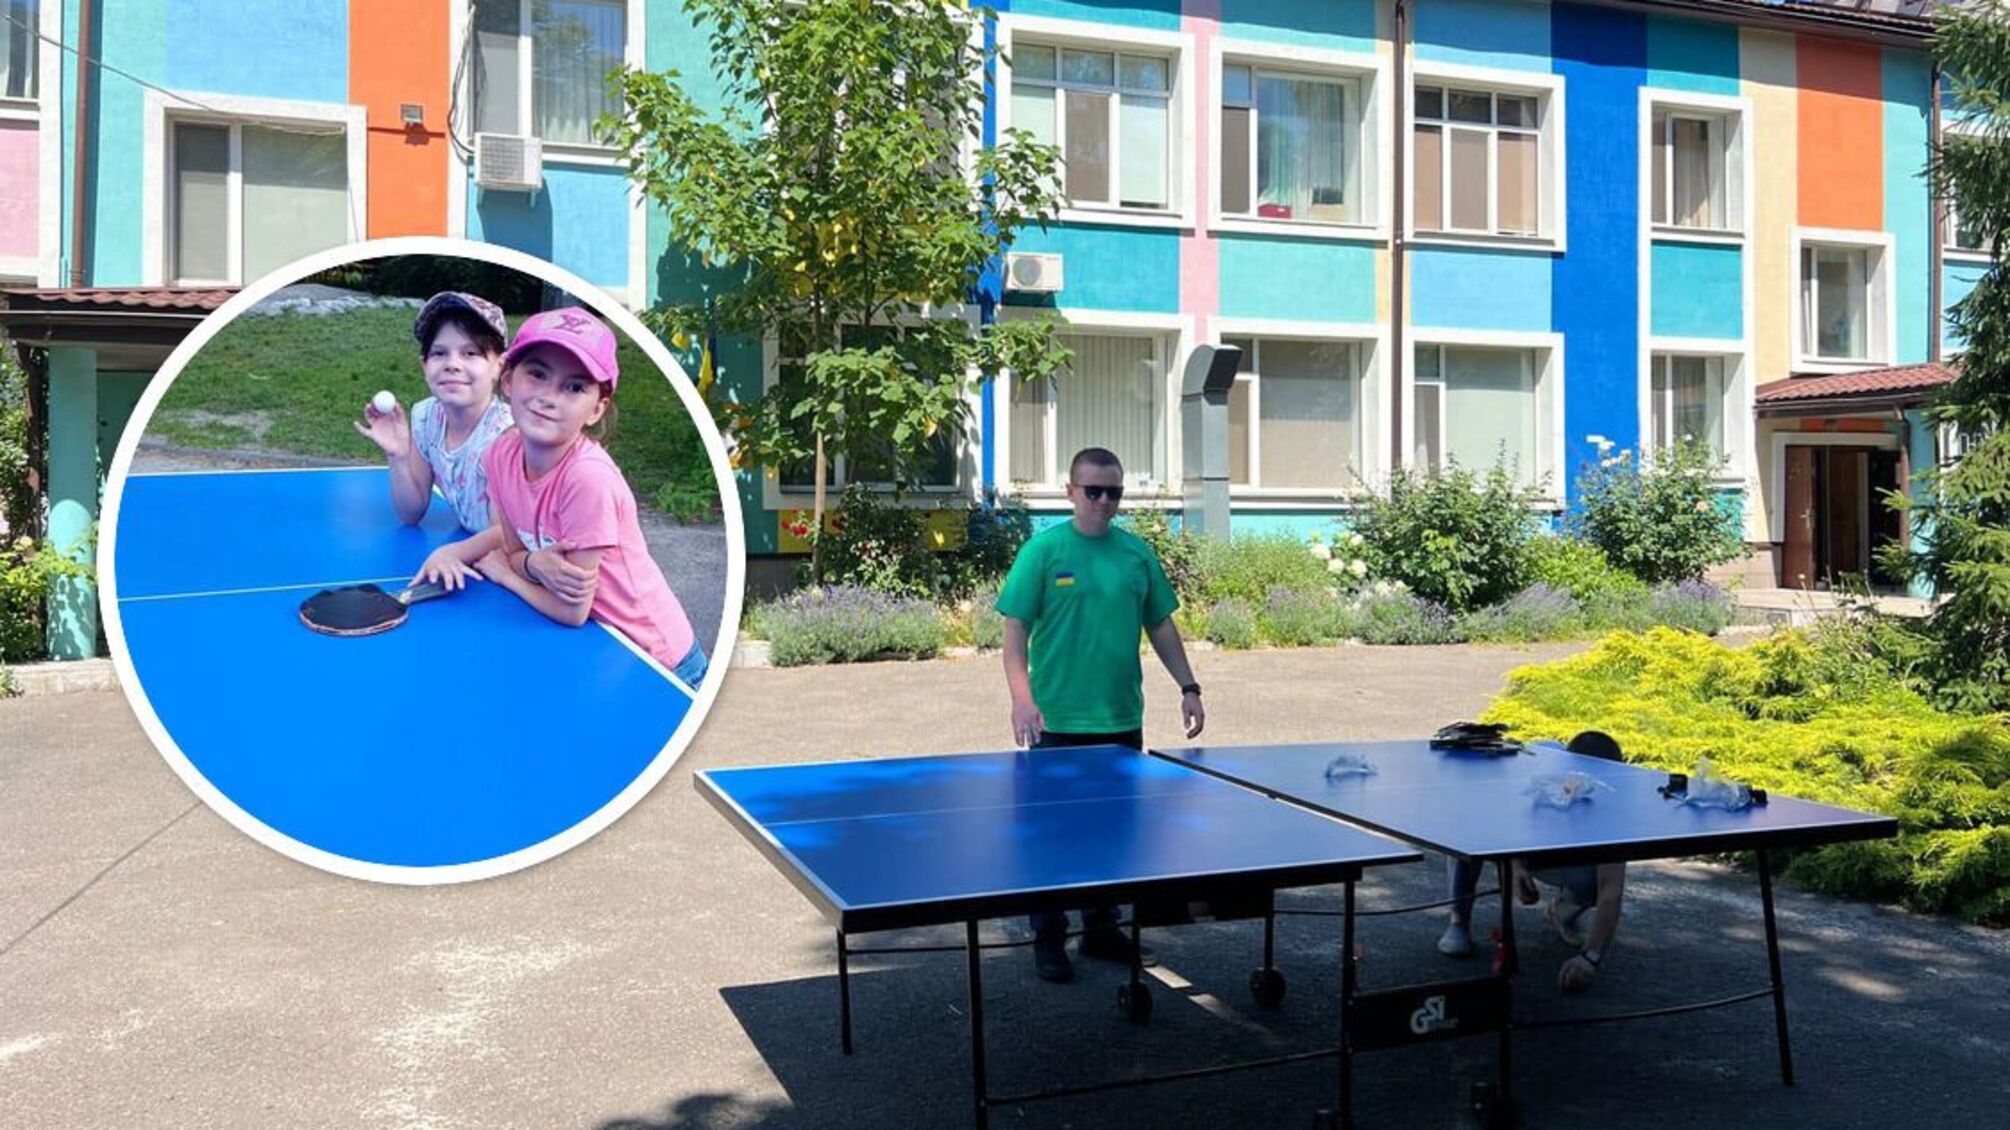 Команда БФ 'Батальон волонтер' передала новенький настольный теннис для питомцев столичного детдома